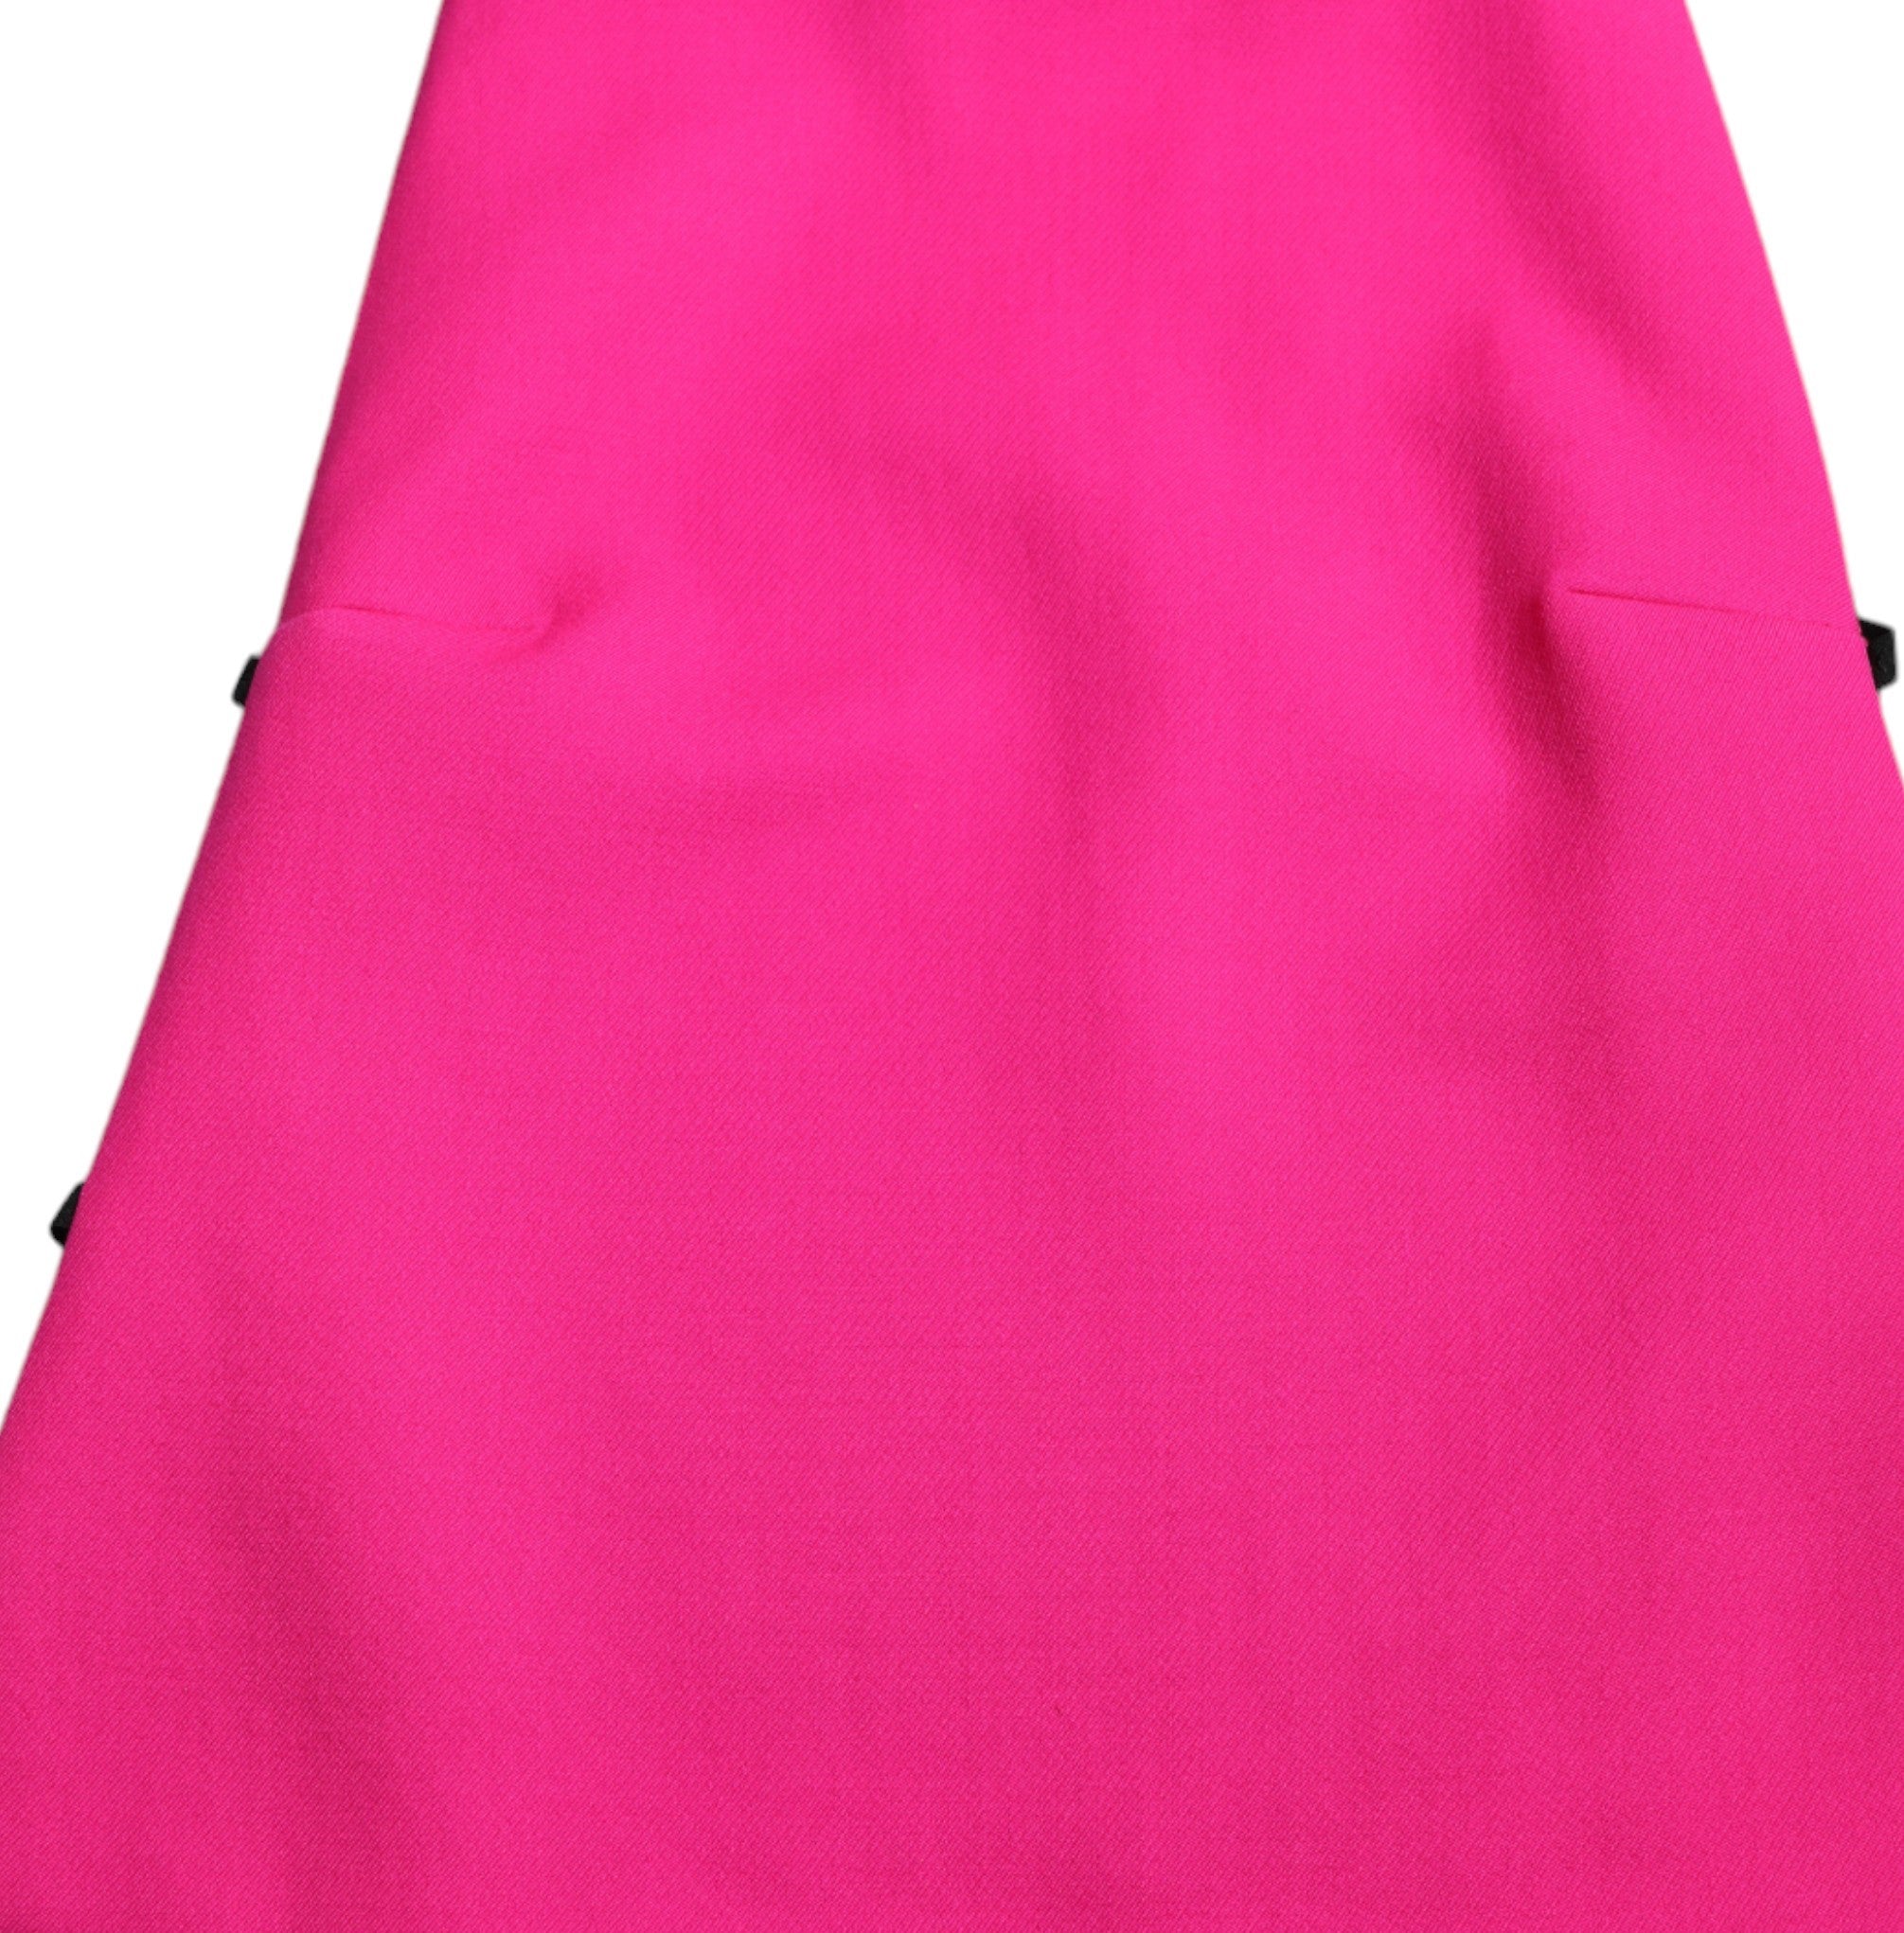 Dolce & Gabbana Elegant Pink Turtleneck Sleeveless Wool Top